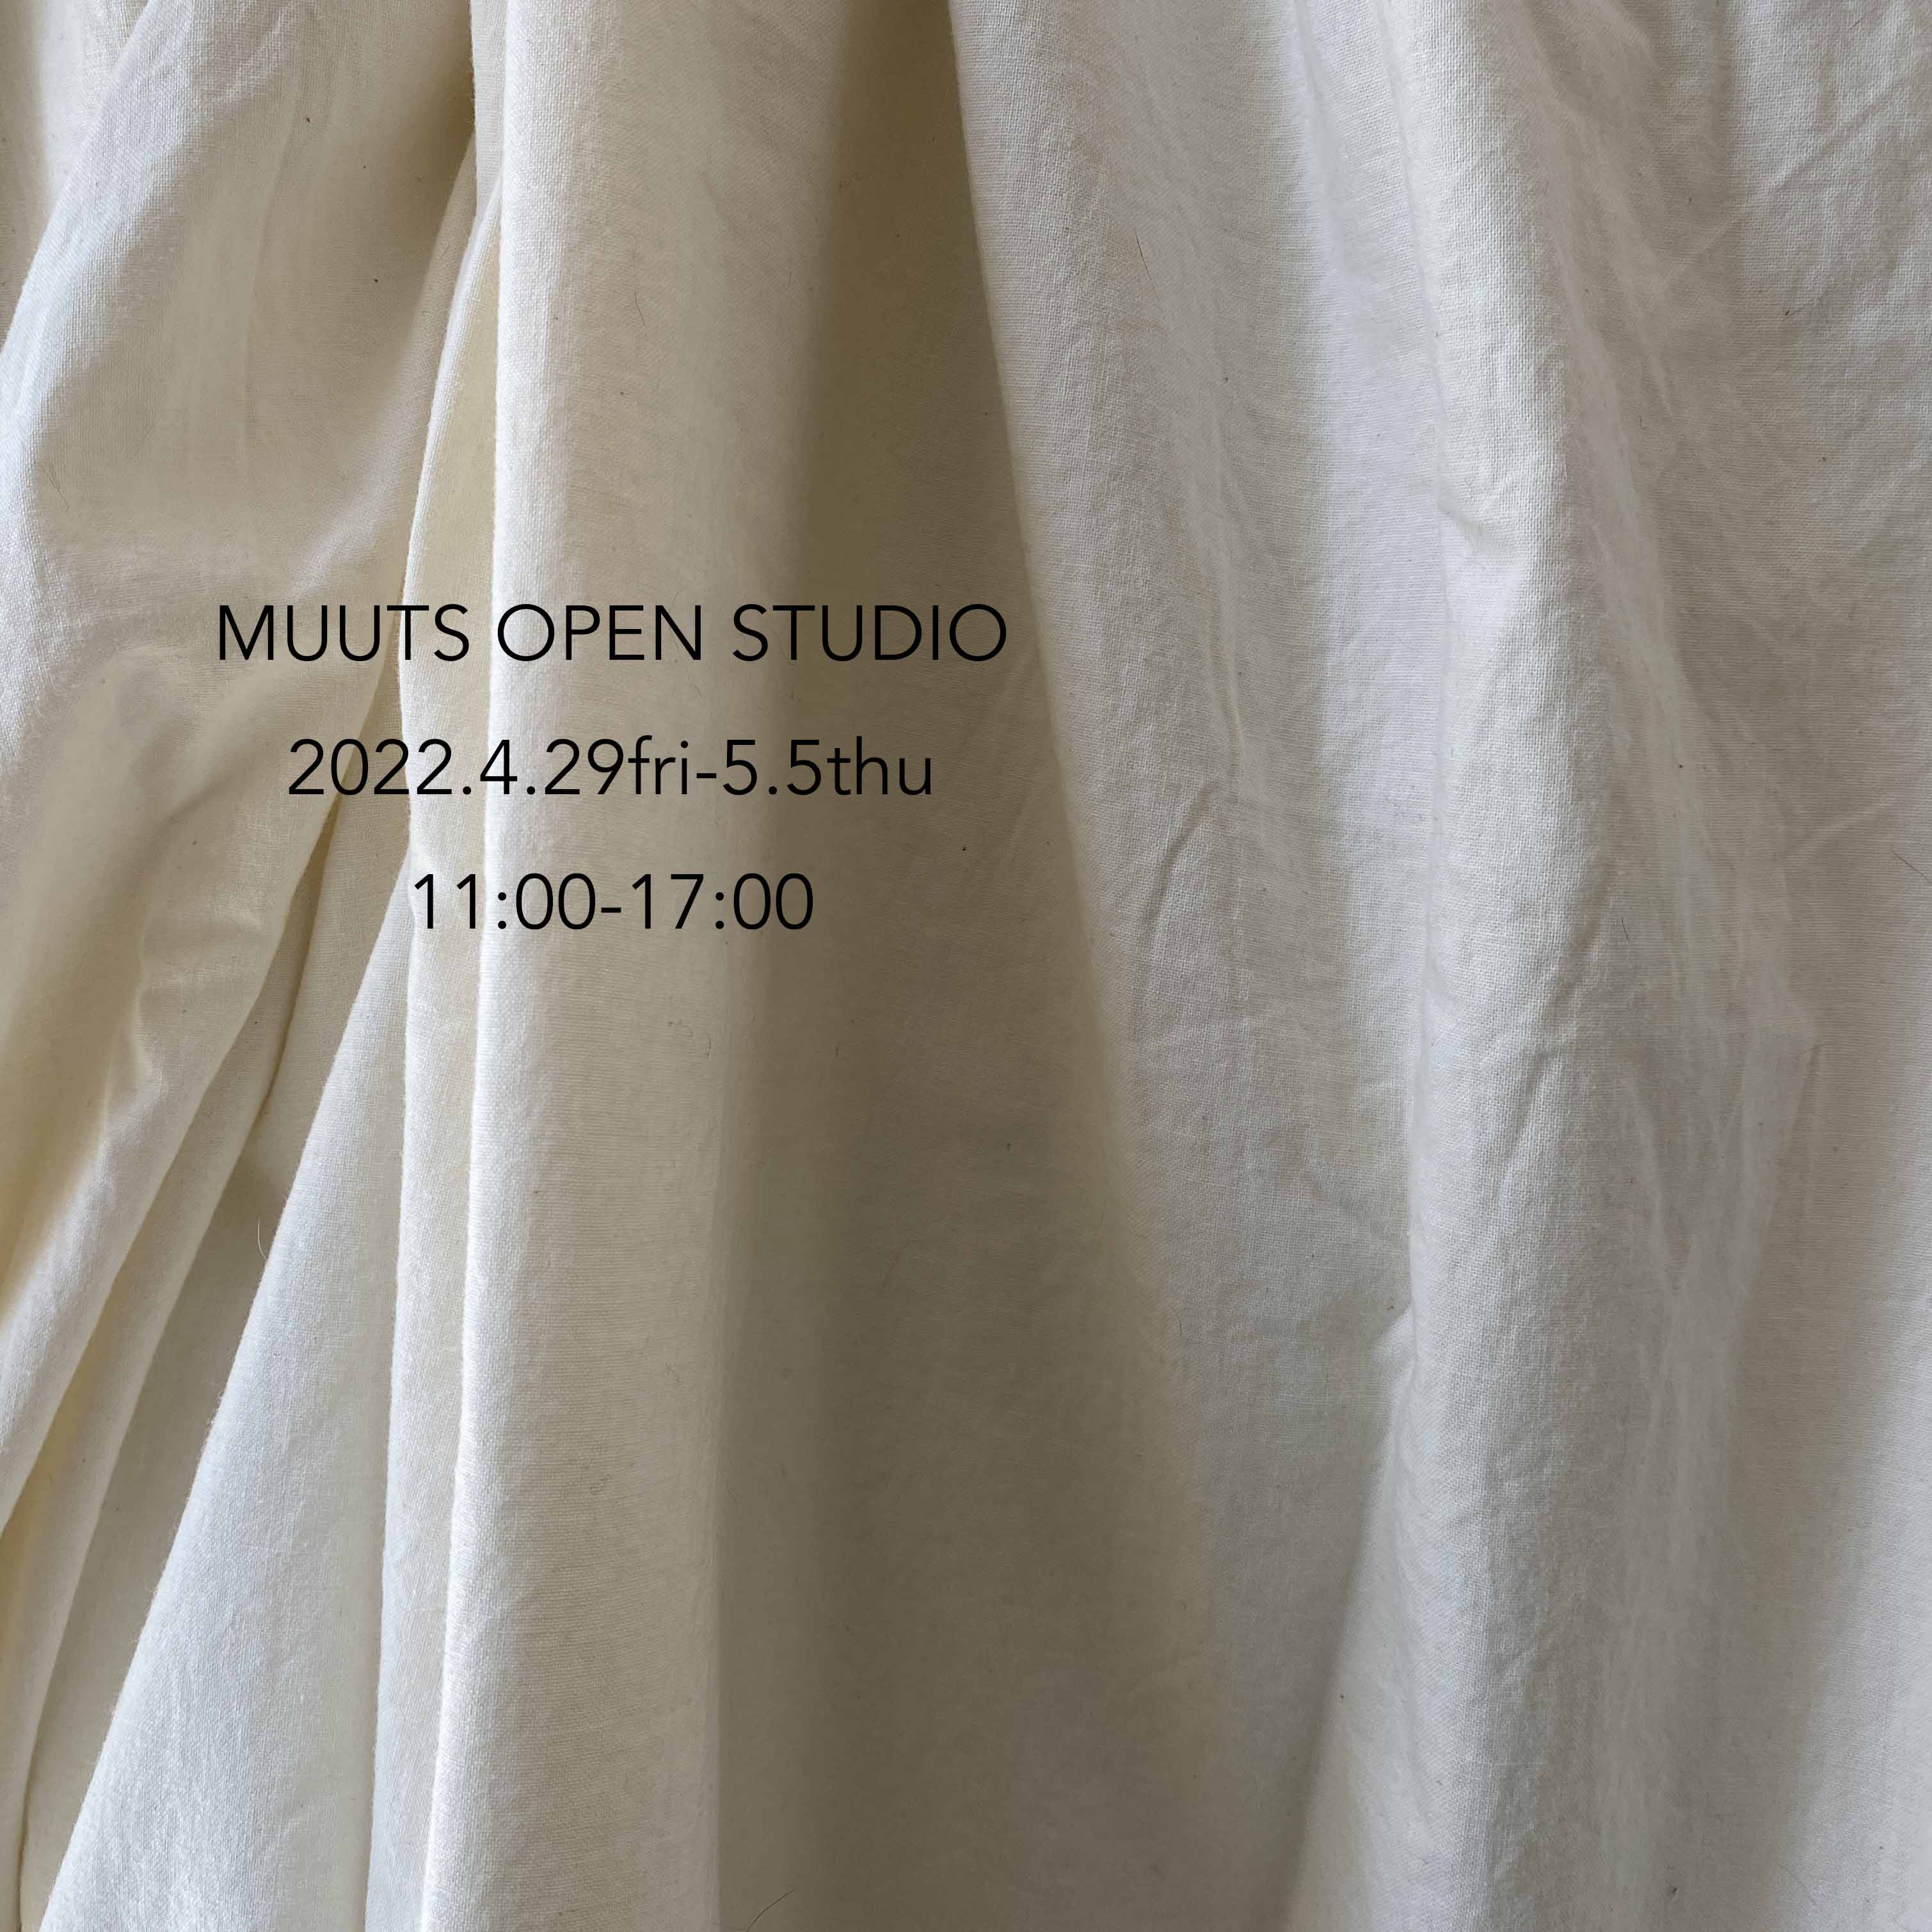 2022 Golden week open studio